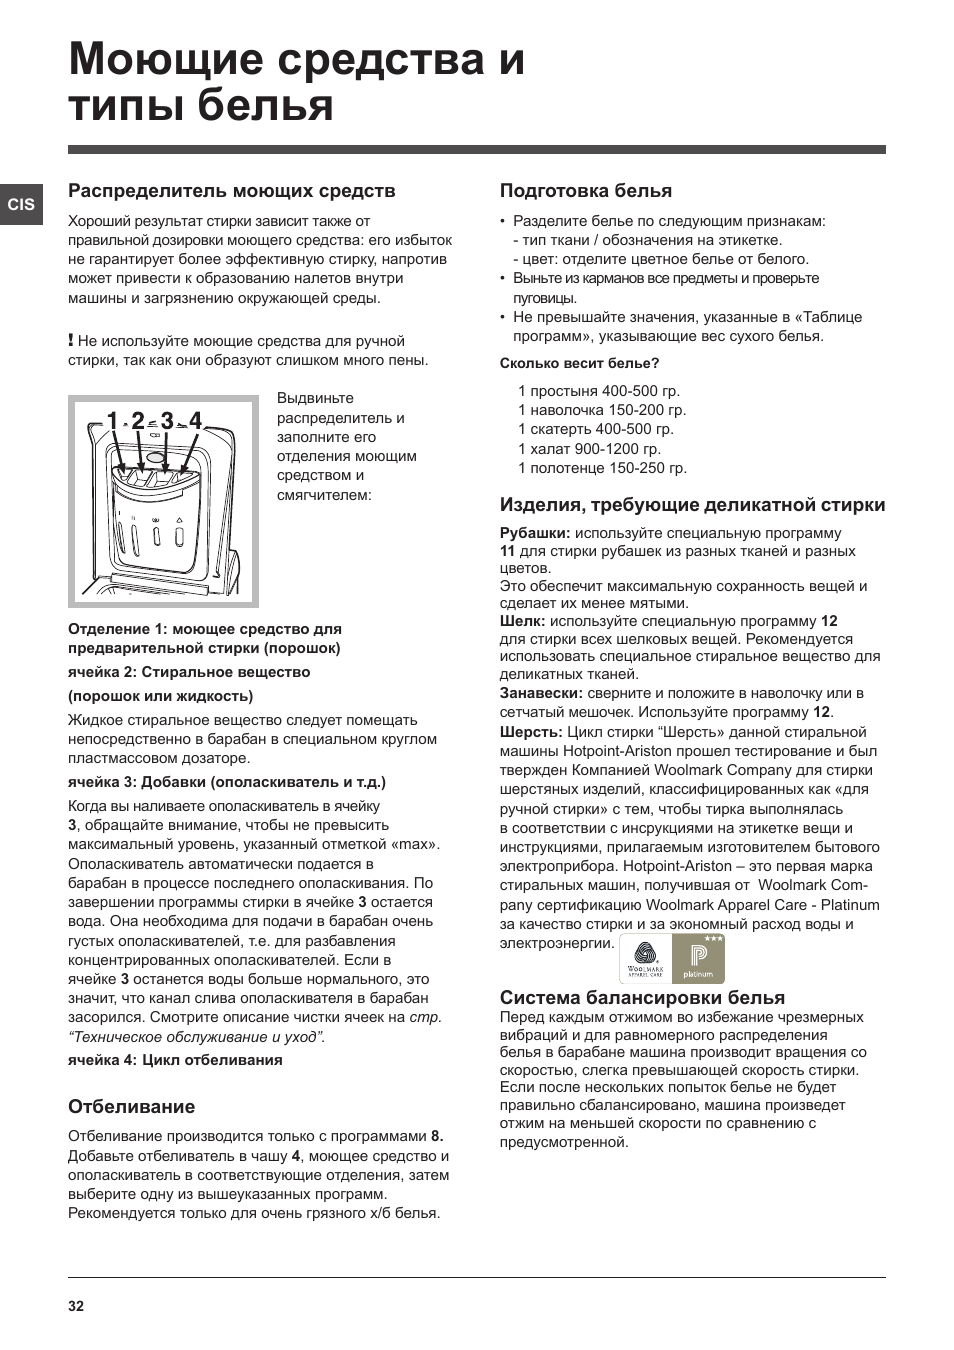 Моющие средства и типы белья | Hotpoint Ariston ARTXL 109 User Manual | Page 32 / 72